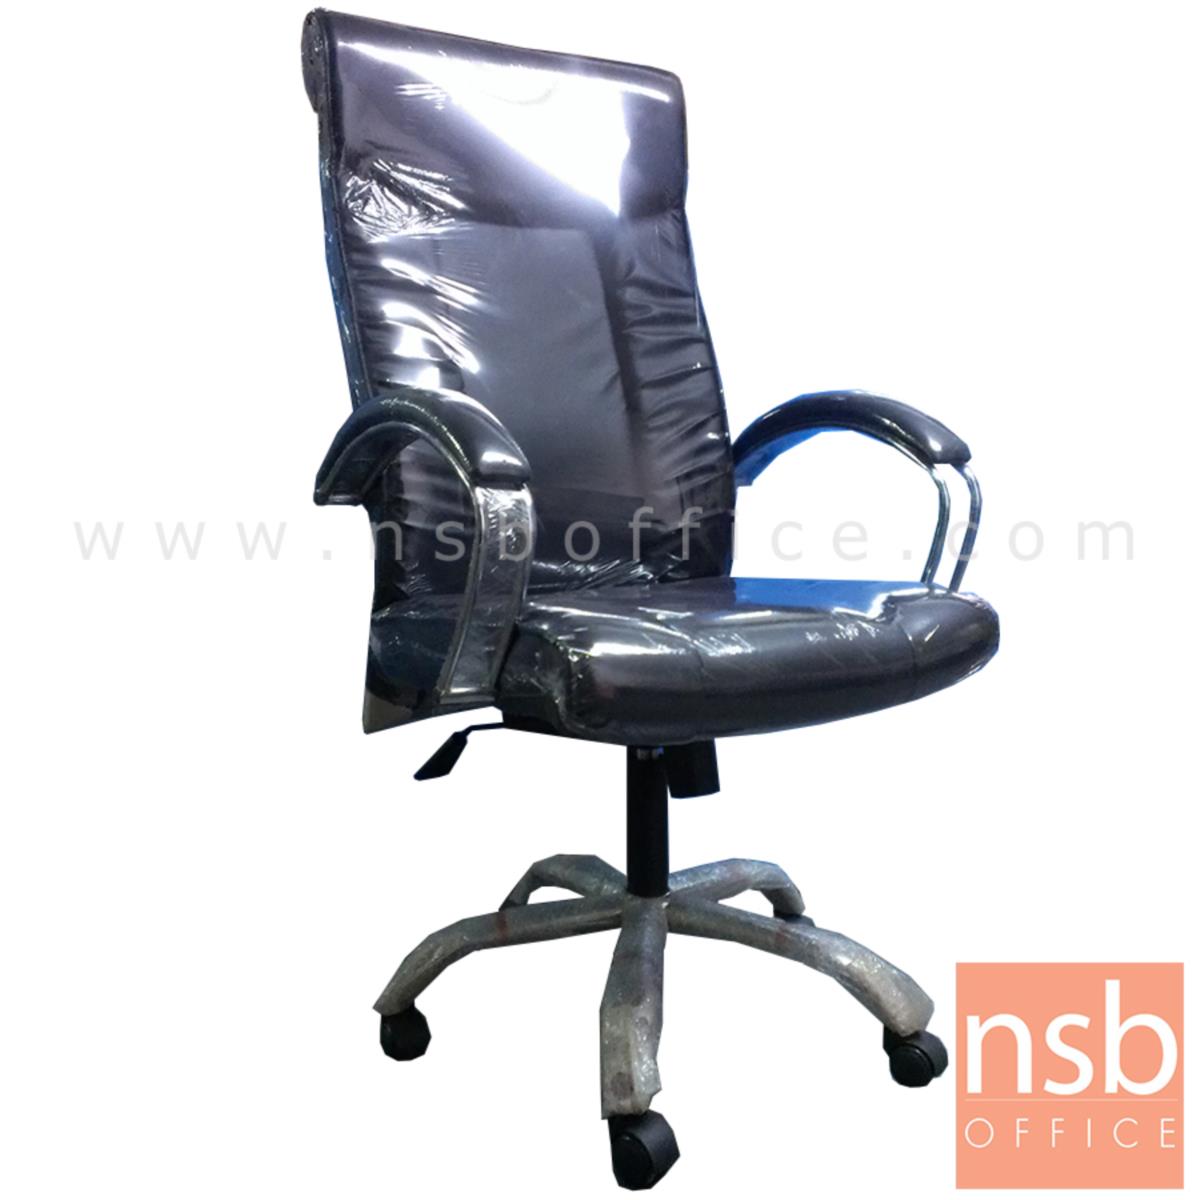 B01A305:เก้าอี้ผู้บริหาร รุ่น Kosheen (โคชีน)  โช๊คแก๊ส มีก้อนโยก ขาพลาสติก